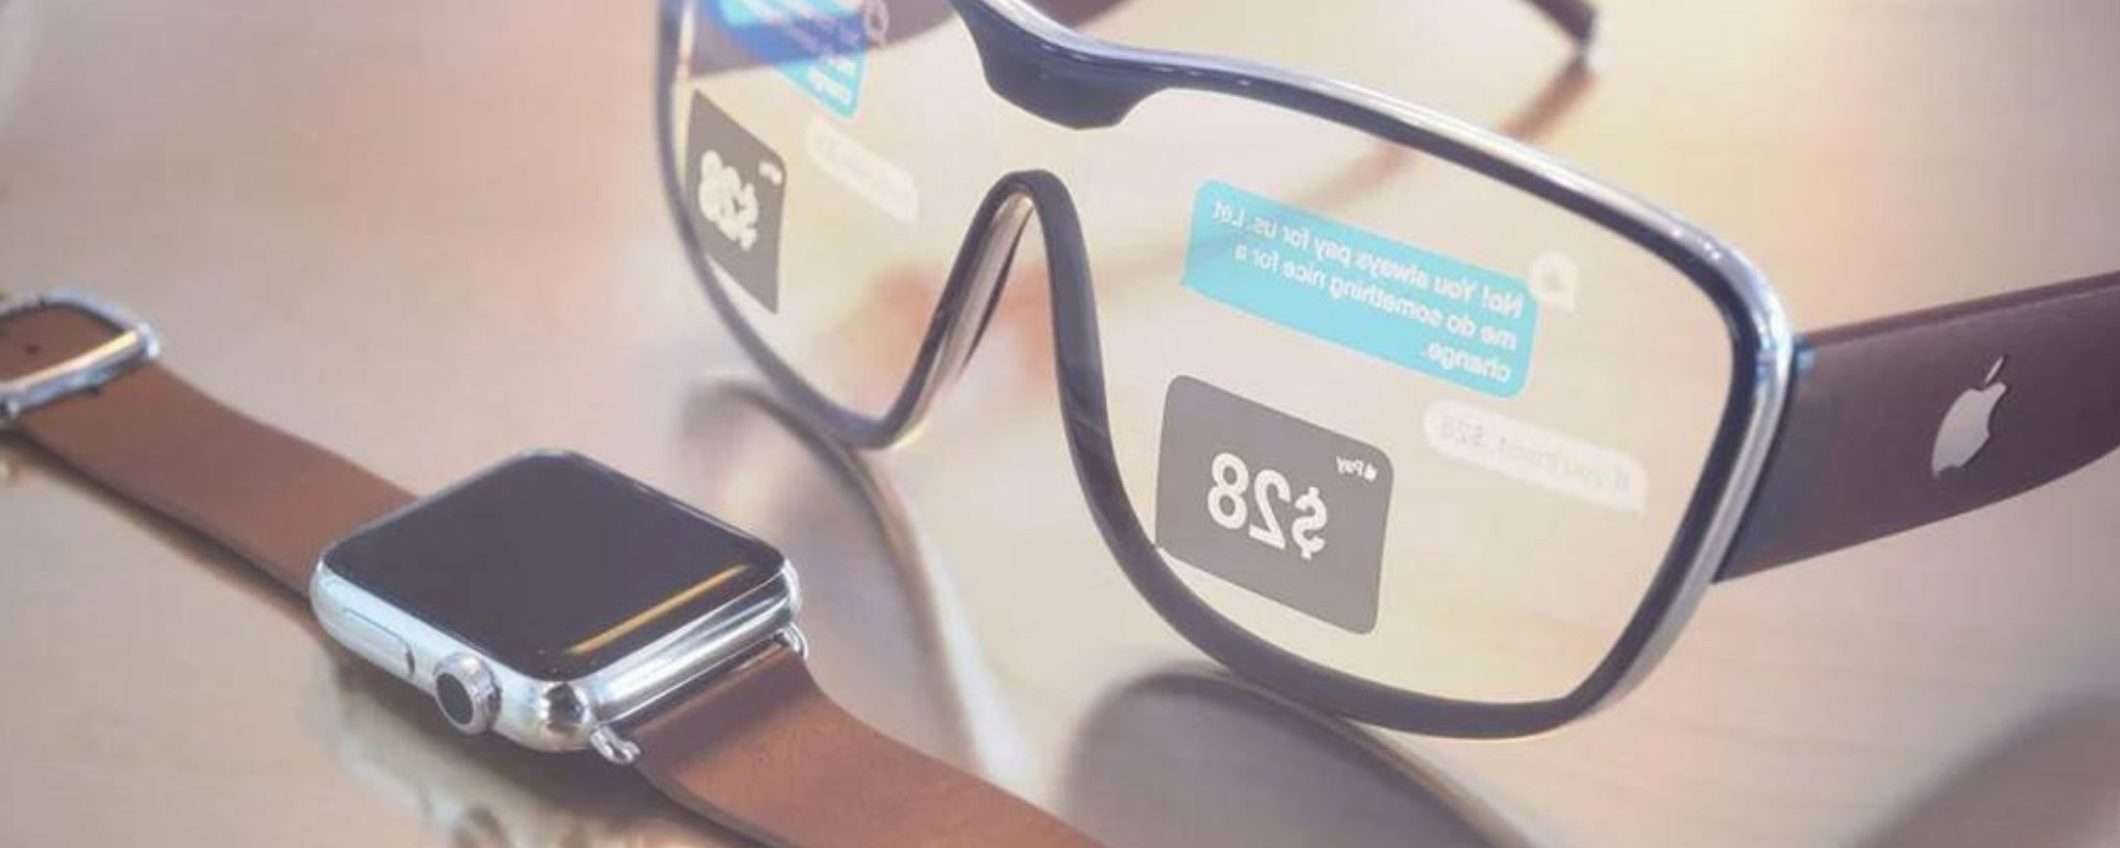 Apple: nel futuro ci saranno anelli smart, occhiali intelligenti e non solo